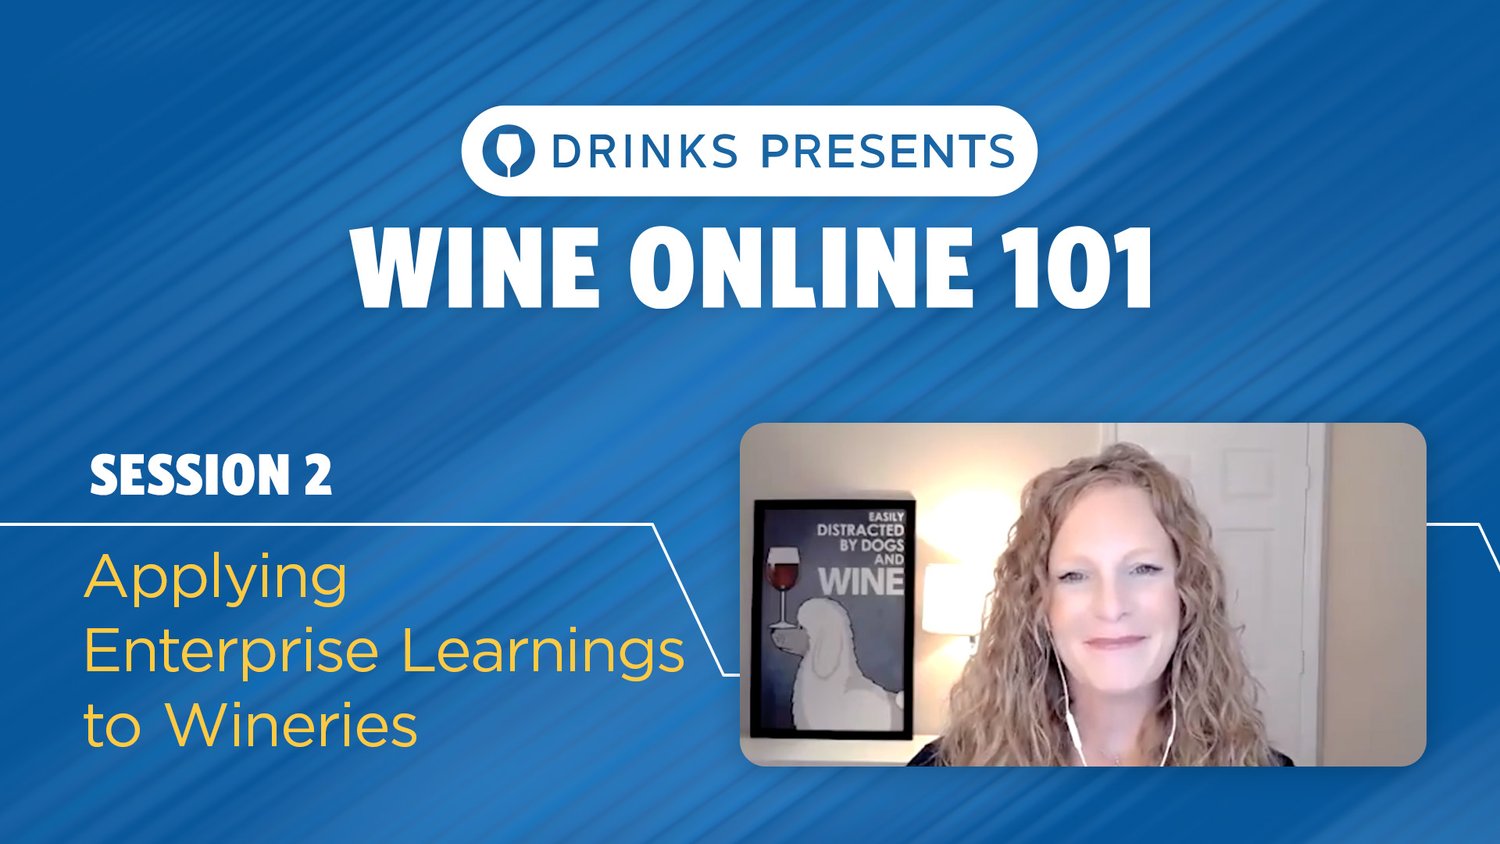 drinks-wine-online-101-title-slide-session-02